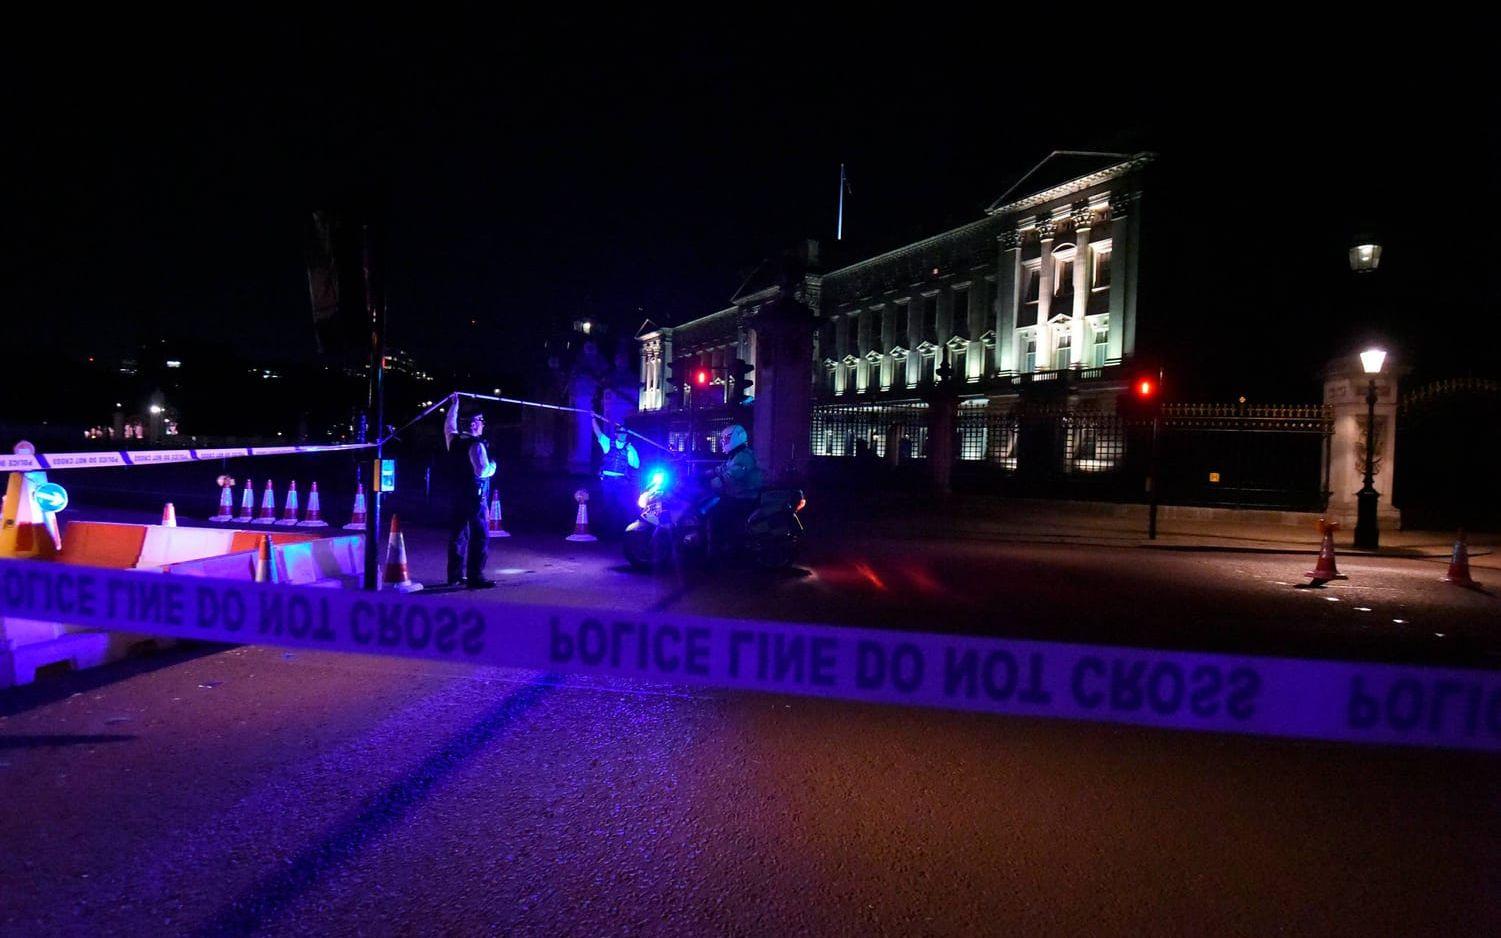 Två poliser skadades utanför Buckingham palace i London under fredagskvällen, när de skulle gripa en person med kniv. Bild: TT